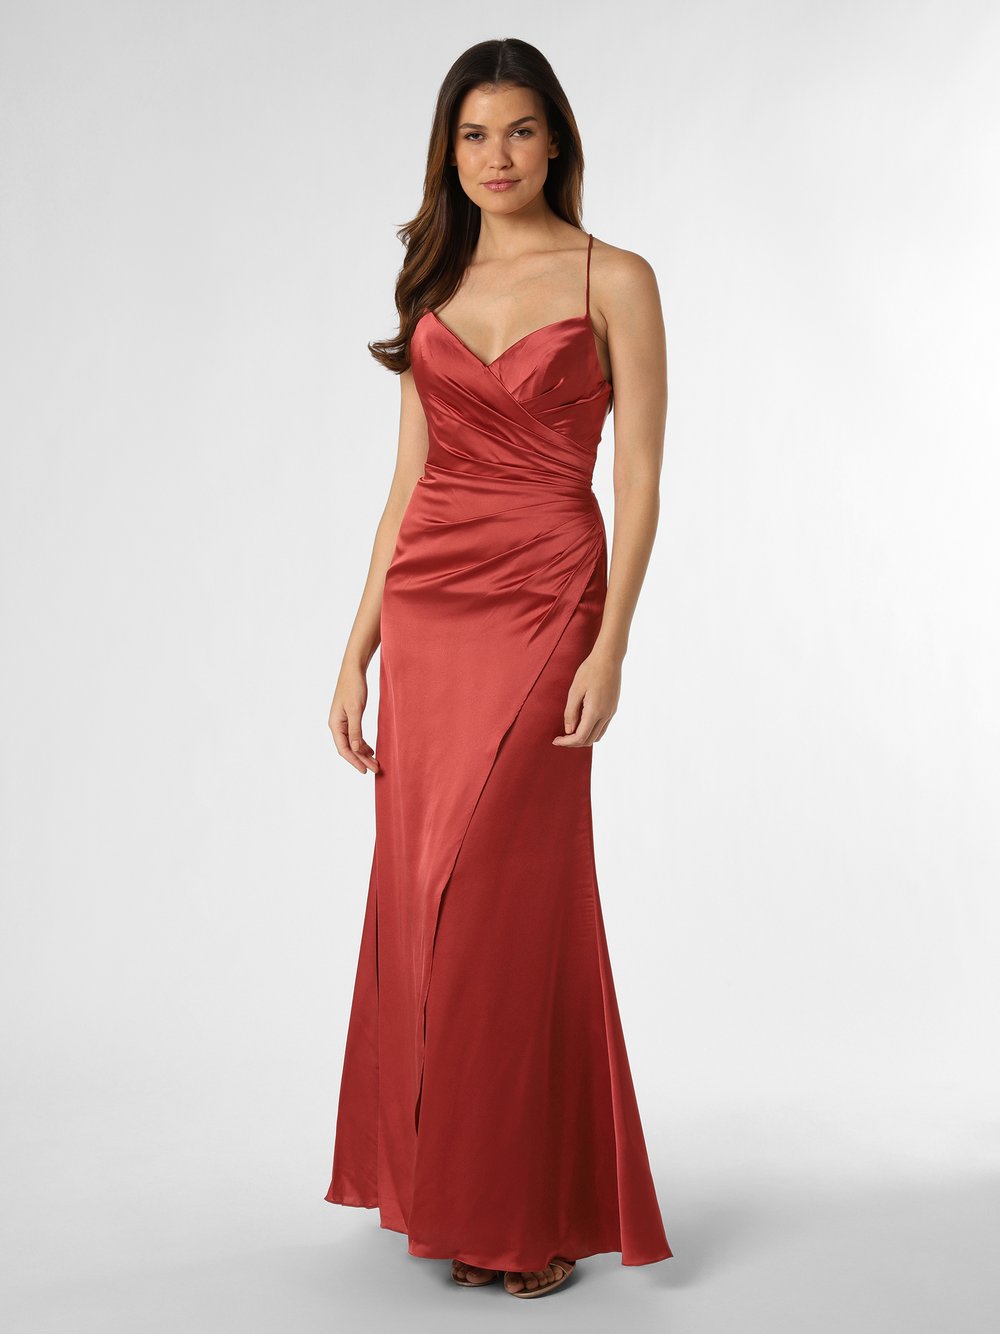 Obraz przedstawiający Luxuar Fashion Damska sukienka wieczorowa Kobiety czerwony jednolity, 40